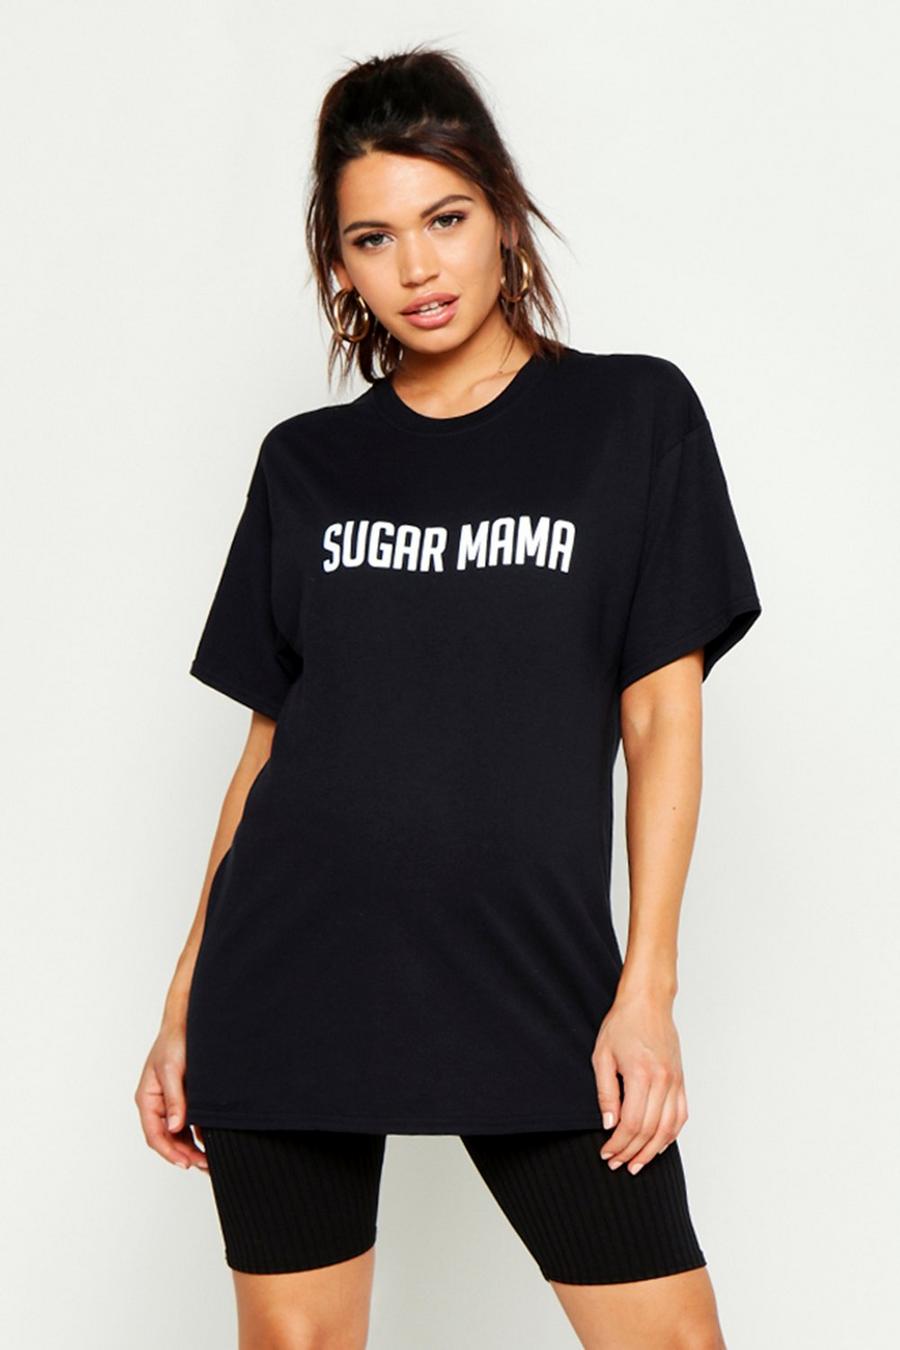 Camiseta con eslogan "Sugar Mama" premamá image number 1